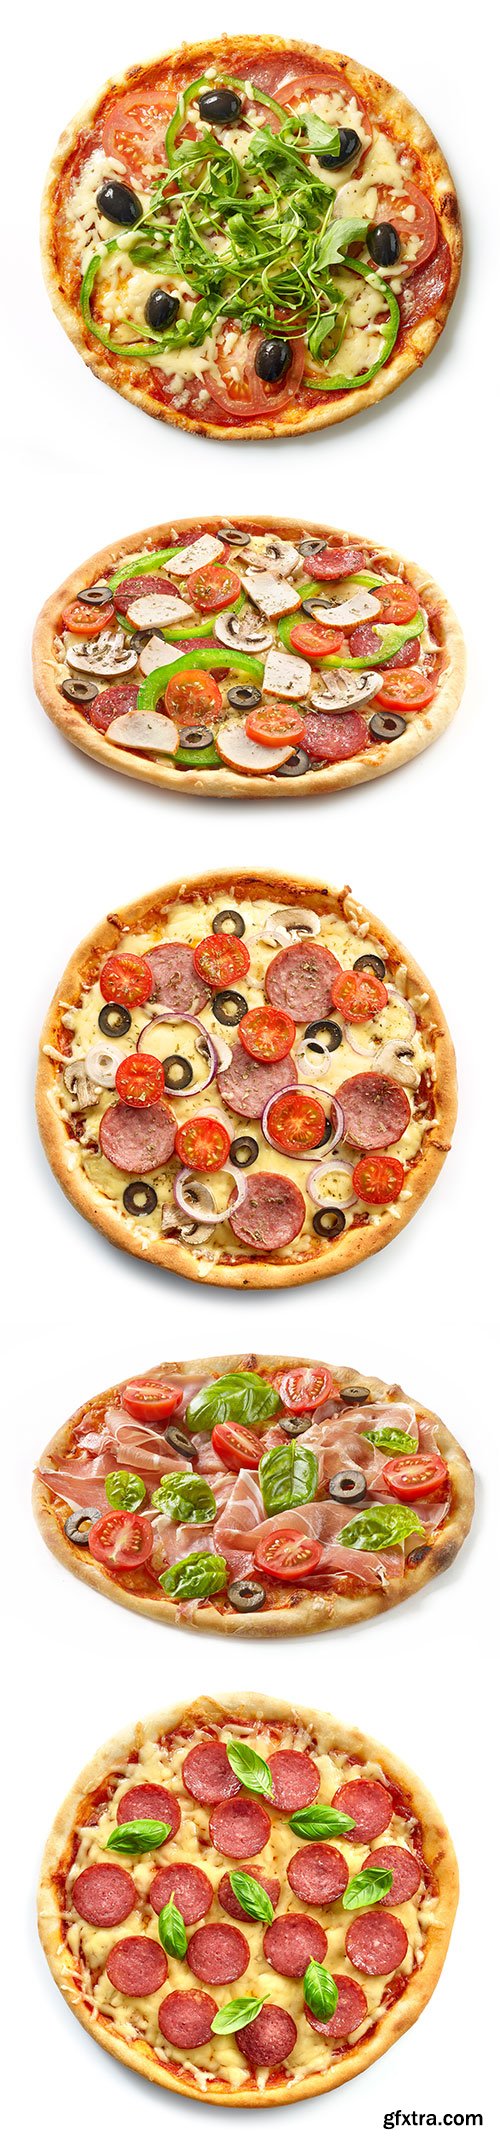 Freshly Baked Pizza Isolated - 10xJPGs